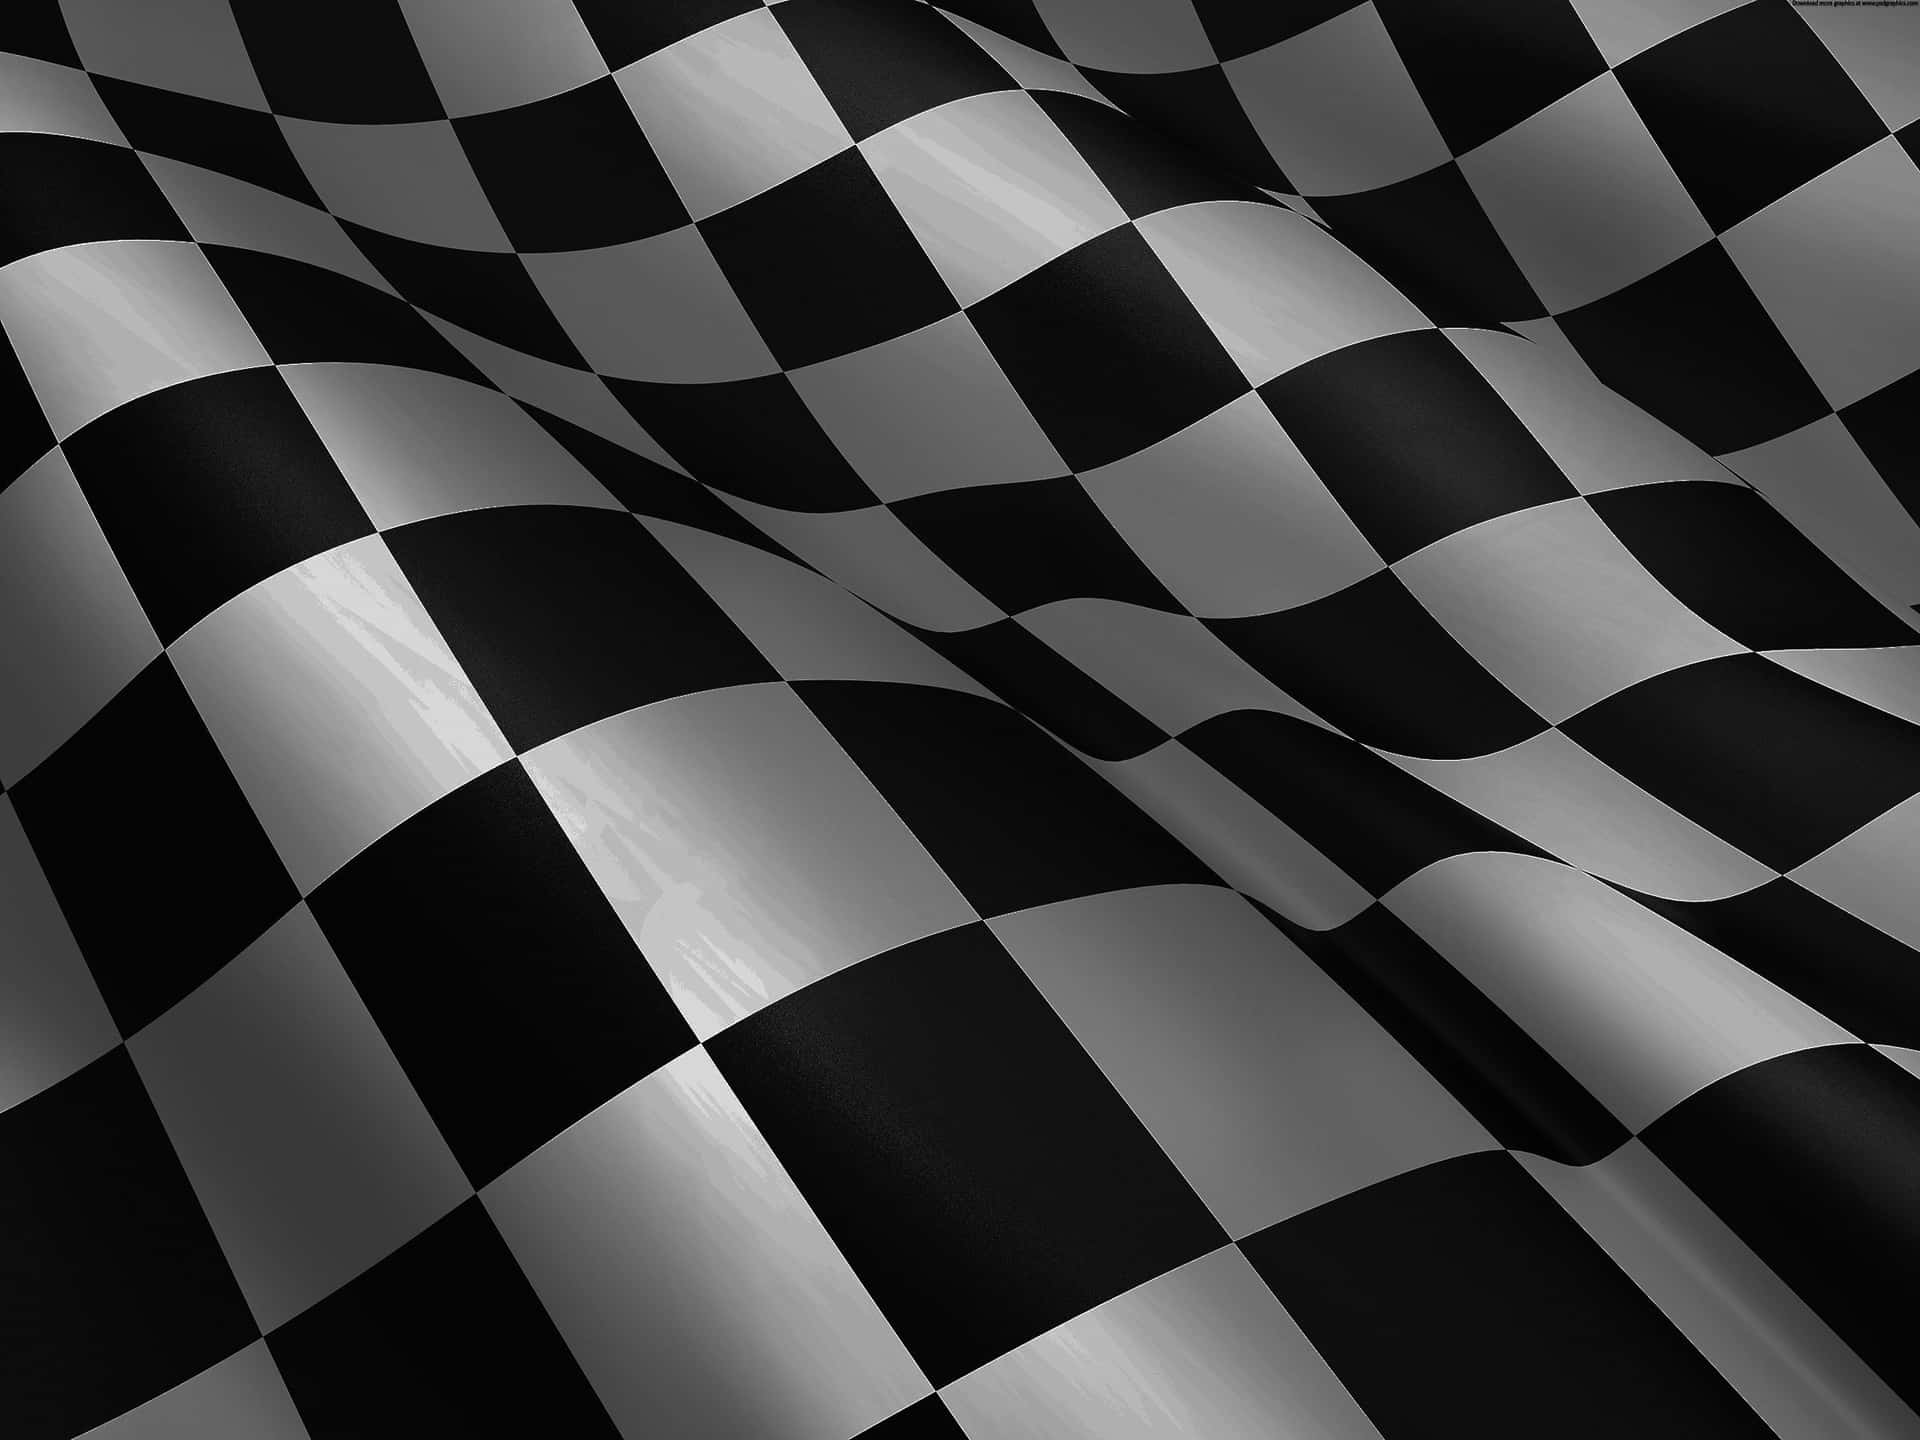 The winner of the #CheckeredFlag race!